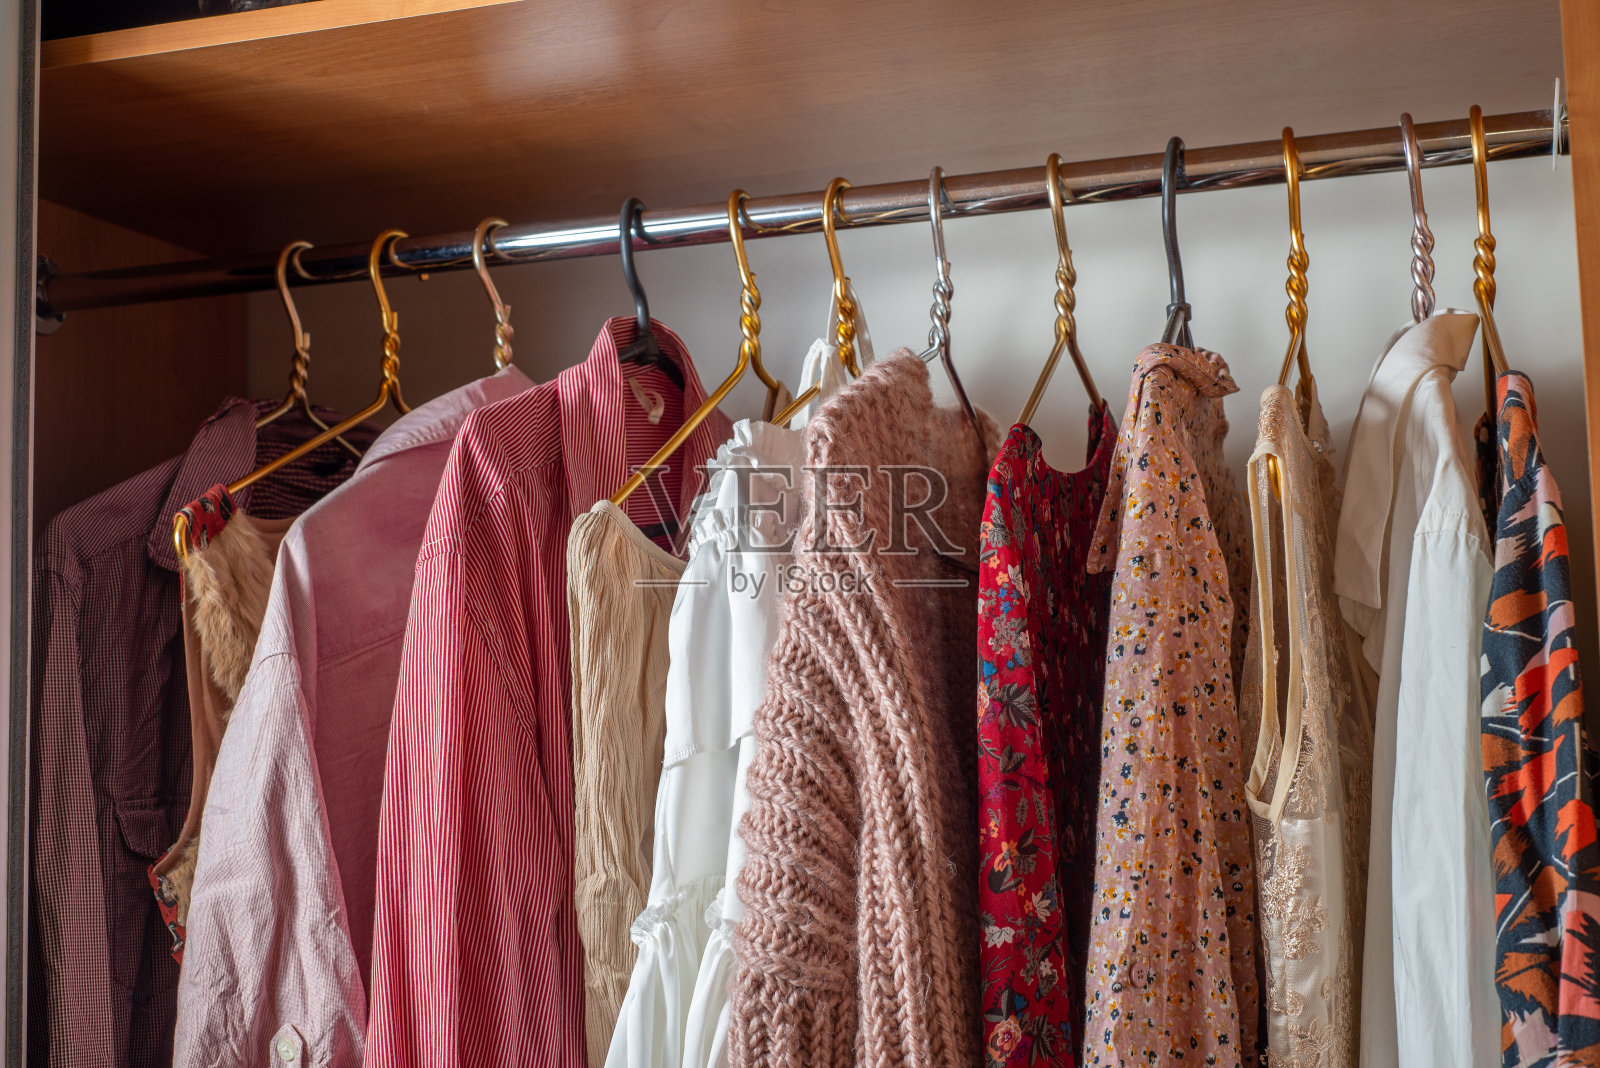 粉色的衣柜。衣柜里的衣架上挂着许多精致轻薄的夏装。
清理房间照片摄影图片